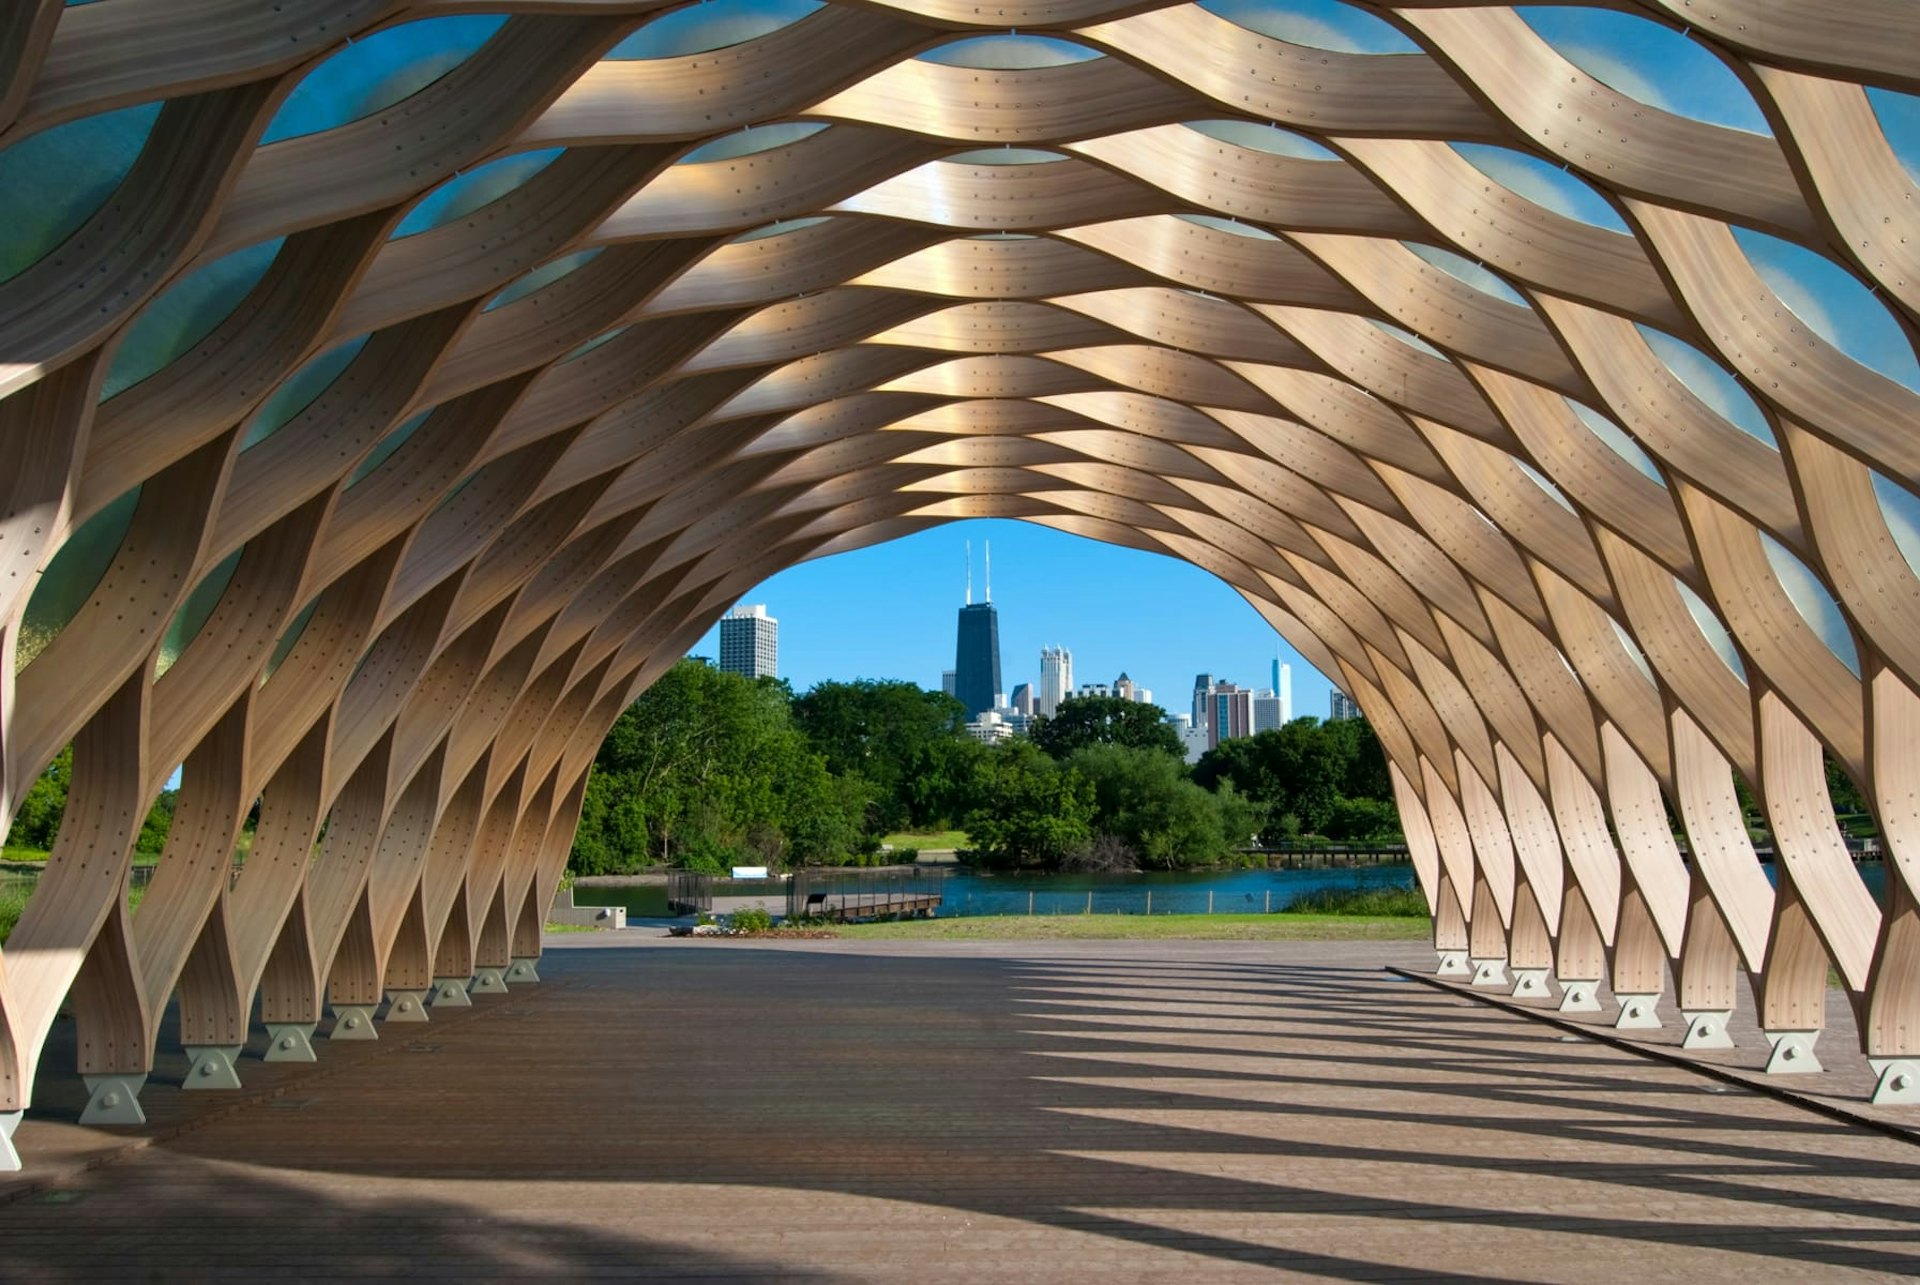 South Pond Pavilion sculpture, Chicago